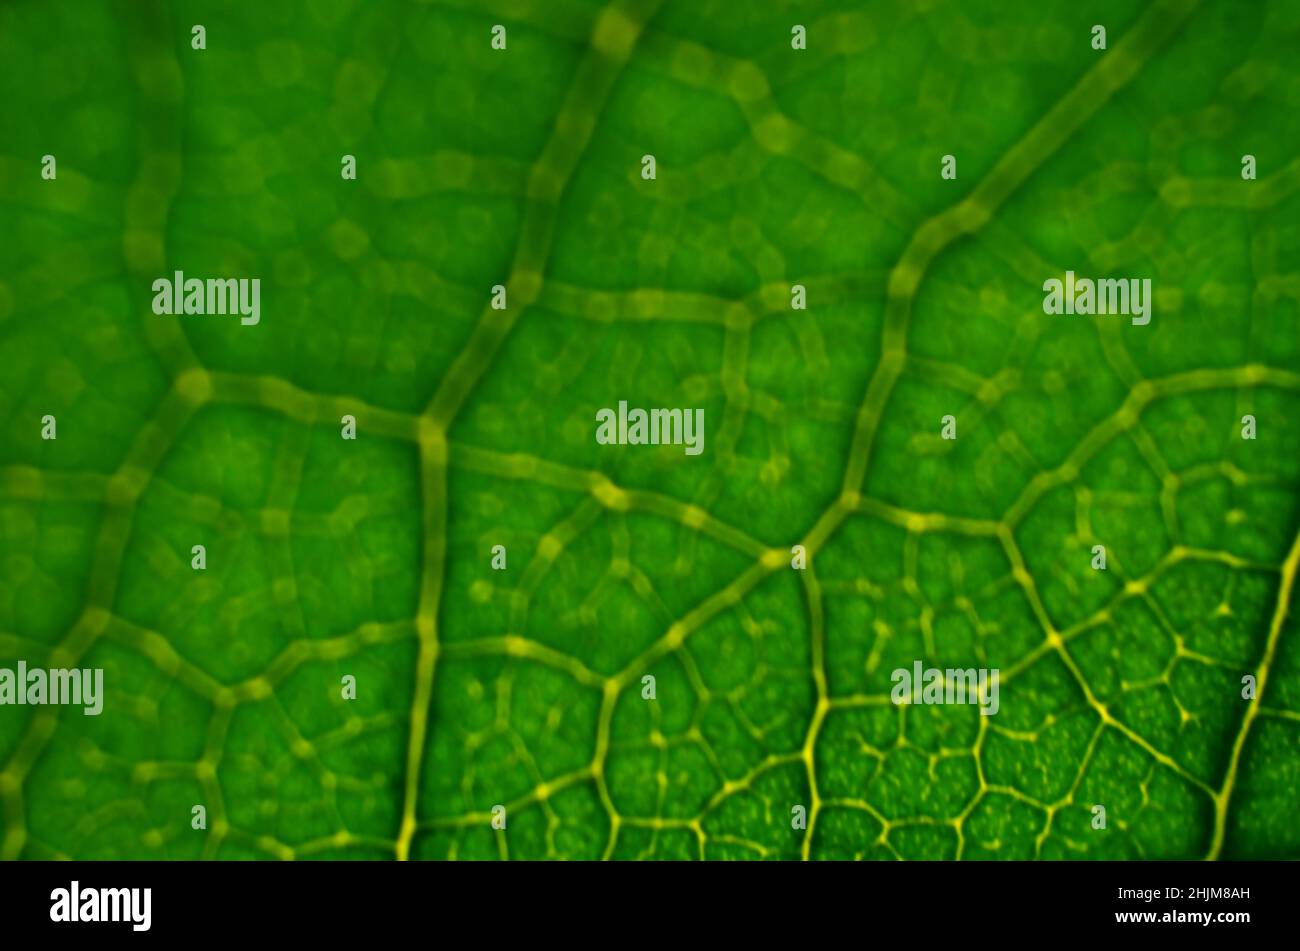 Nahaufnahme eines unfokussierter Bildes mit grüner Blattstruktur. Abstrakter grüner Hintergrund mit Kopierbereich. Stockfoto